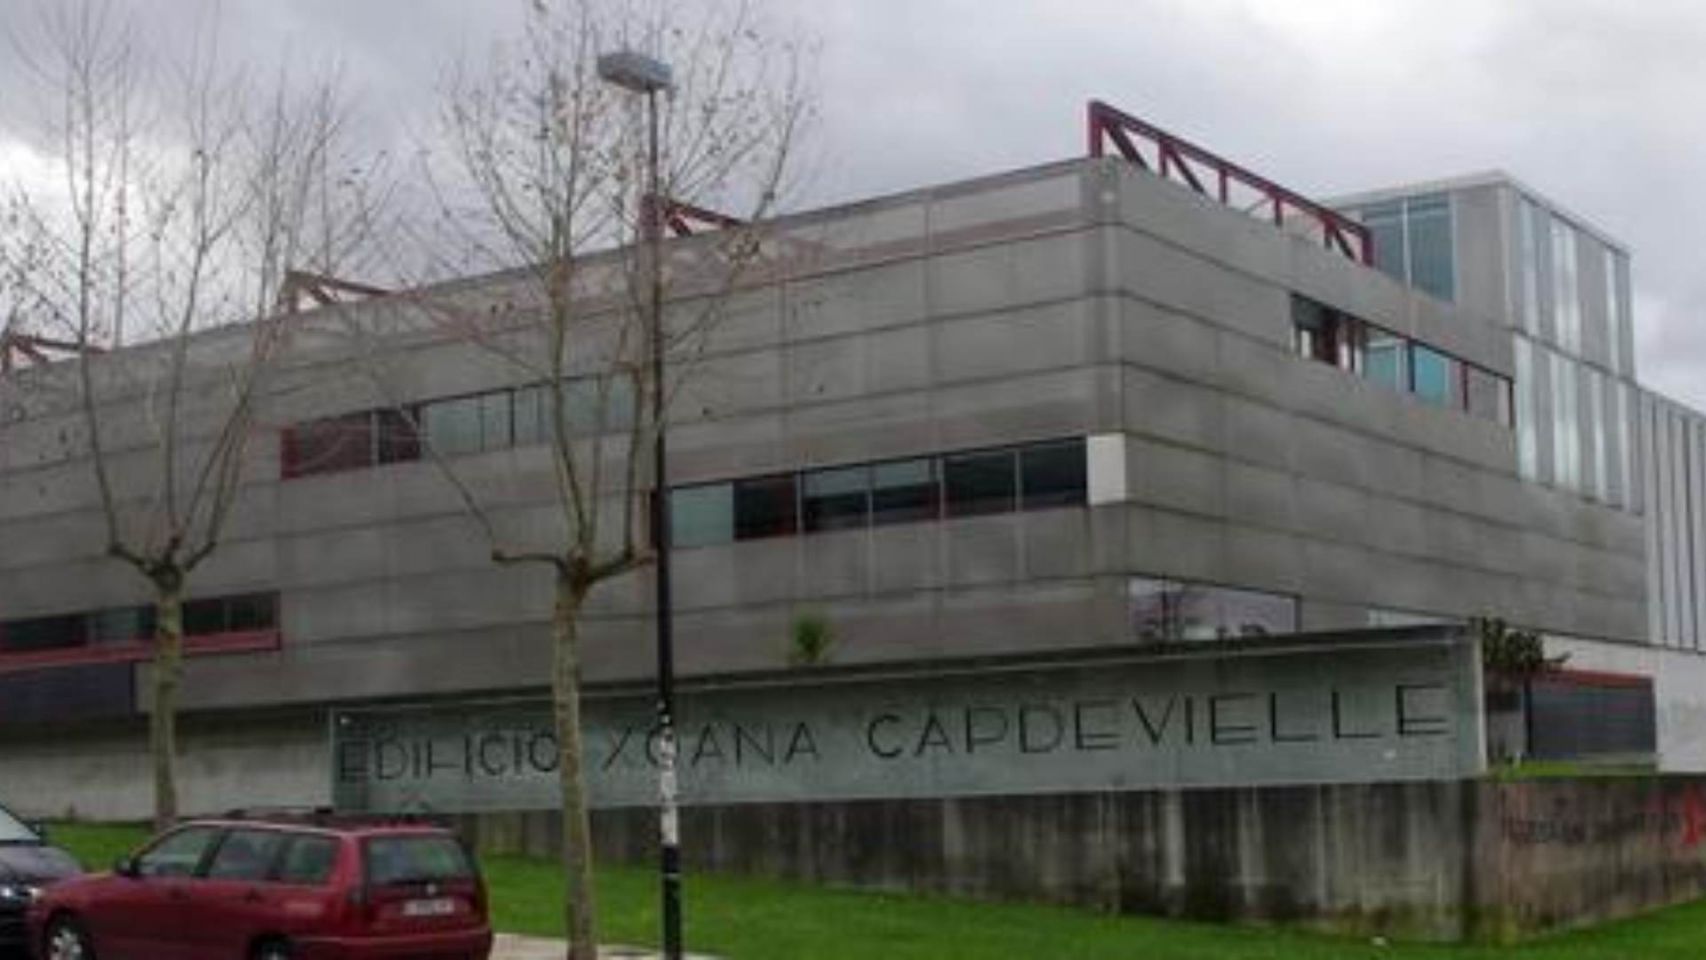 Edificio Xoana Capdevielle, declarado 'Espazo Sen Fume'